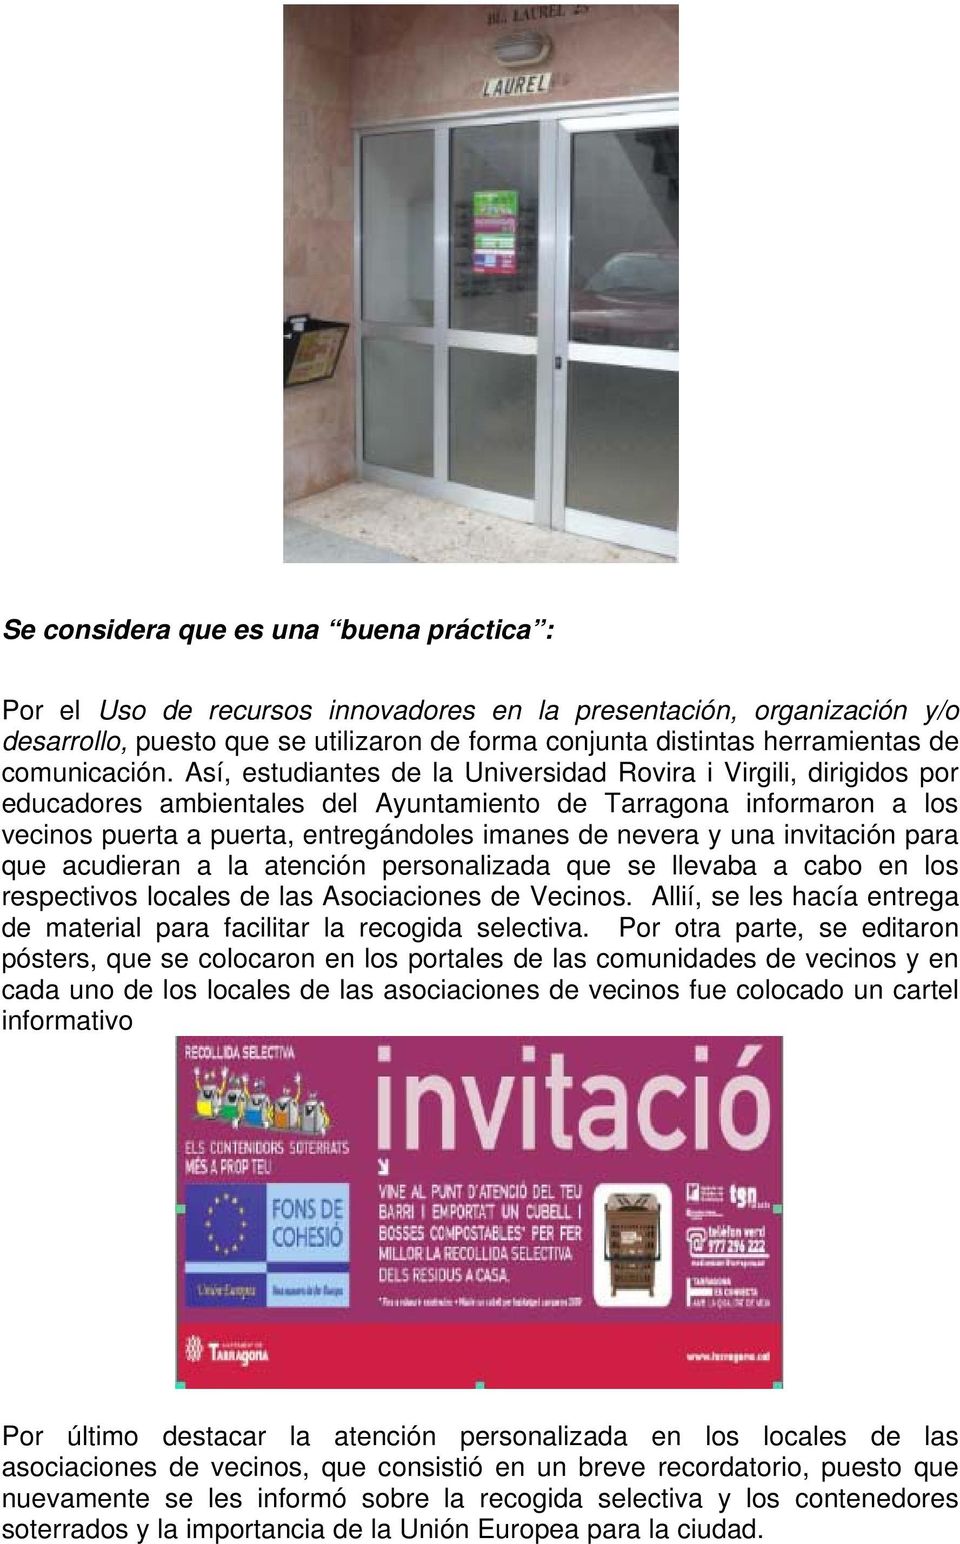 Así, estudiantes de la Universidad Rovira i Virgili, dirigidos por educadores ambientales del Ayuntamiento de Tarragona informaron a los vecinos puerta a puerta, entregándoles imanes de nevera y una